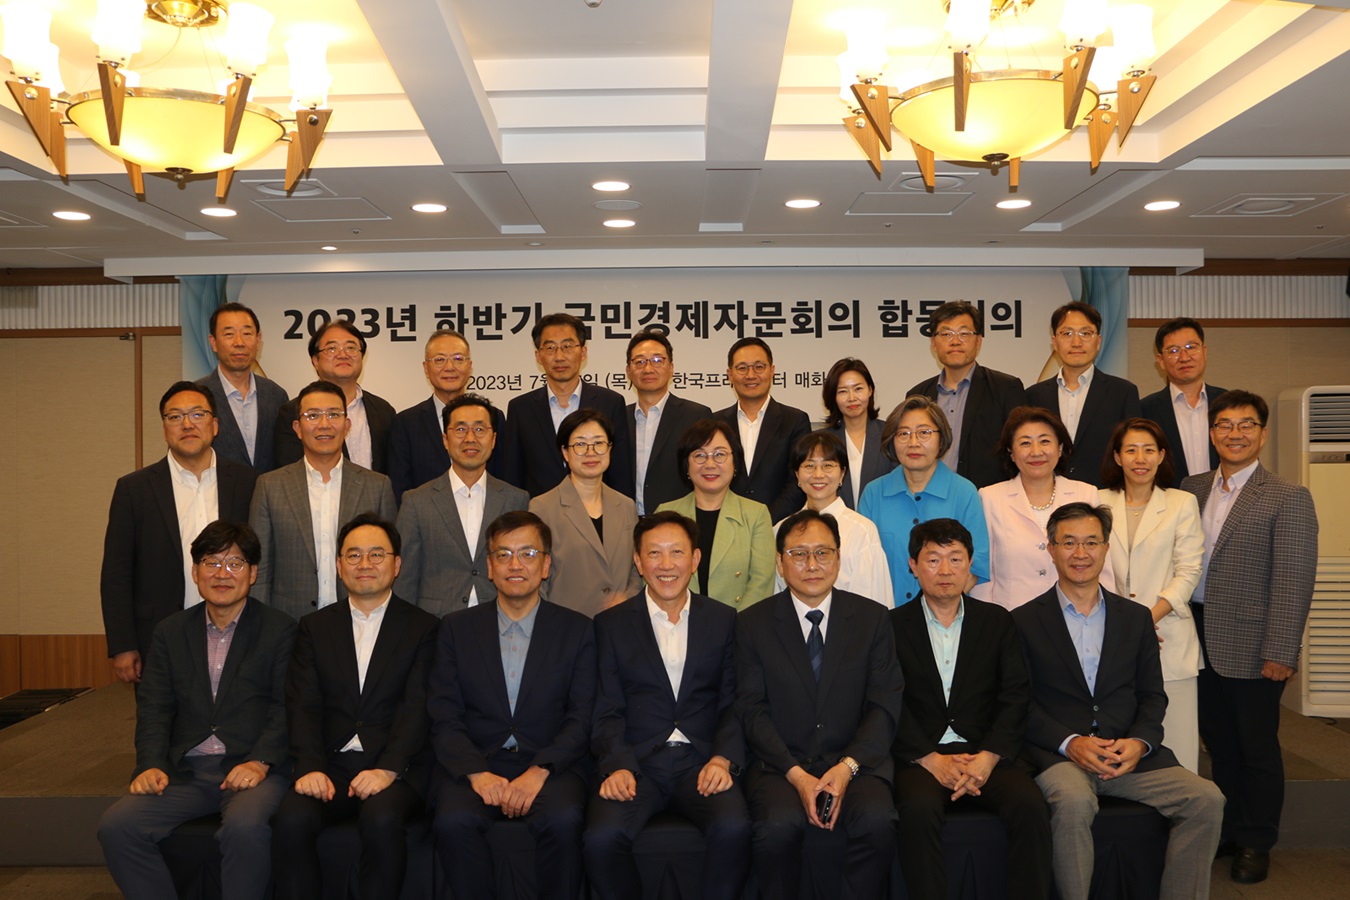 2021년도 국민경제자문회의, 한국경제학회 공동 정책포럼 배너 이미지